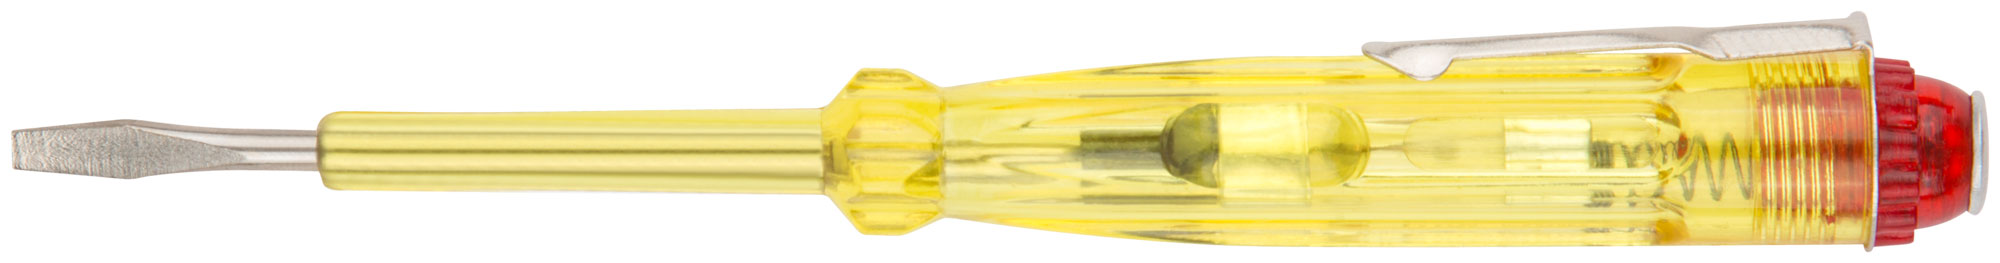 Отвертка индикаторная, желтая ручка 100 - 500 В, 140 мм КУРС 56501 отвертка индикаторная курс 56508 многофункциональная 12 220 в 130 мм